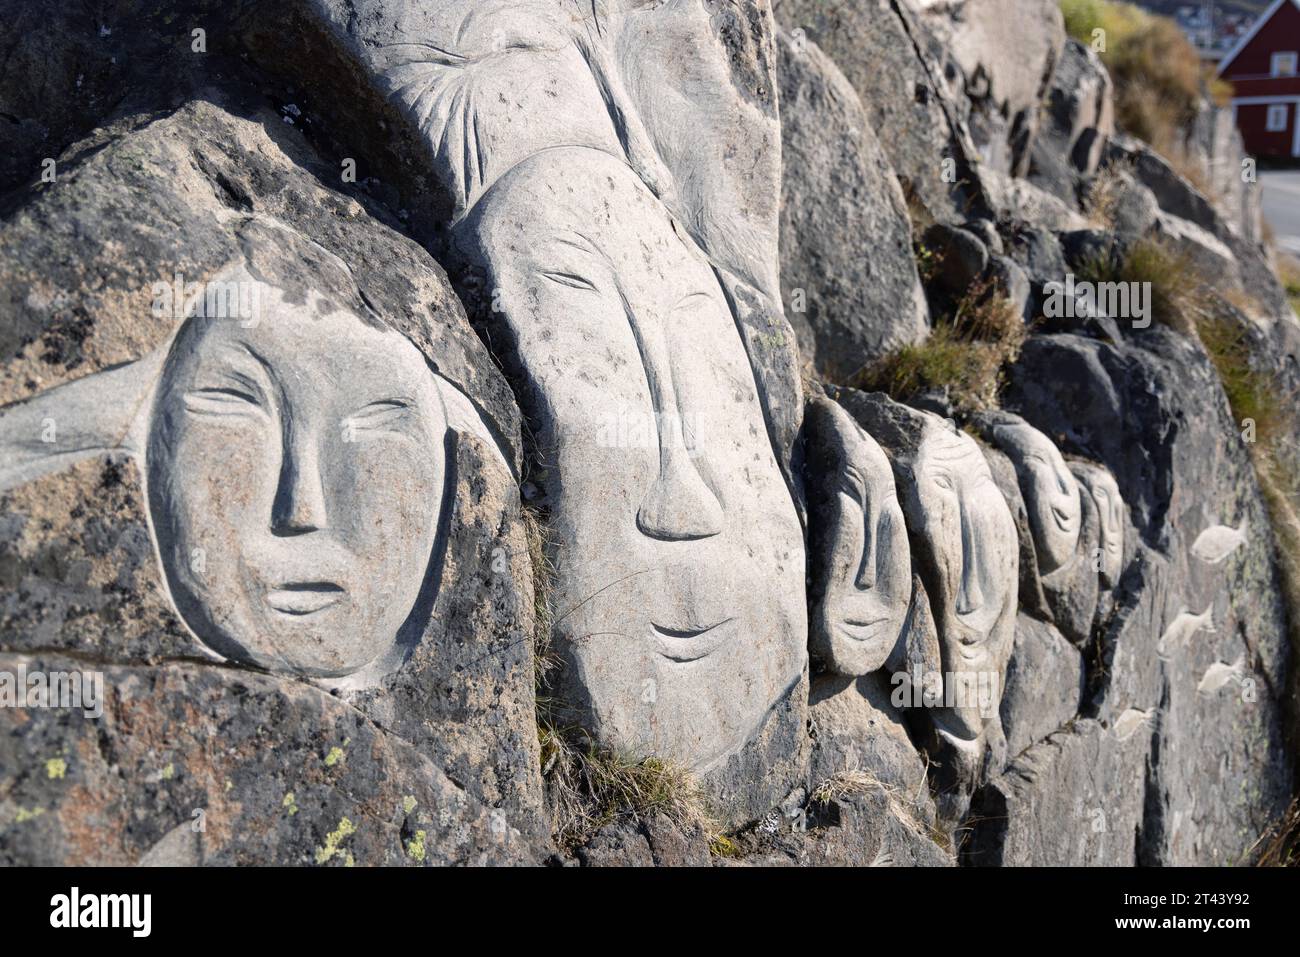 Traditionelle inuit-Skulptur; Steingesichter, Teil der Freiluftgalerie „Stone and man“ mit Steinskulpturen, Qaqortoq, Grönland Arktis Stockfoto